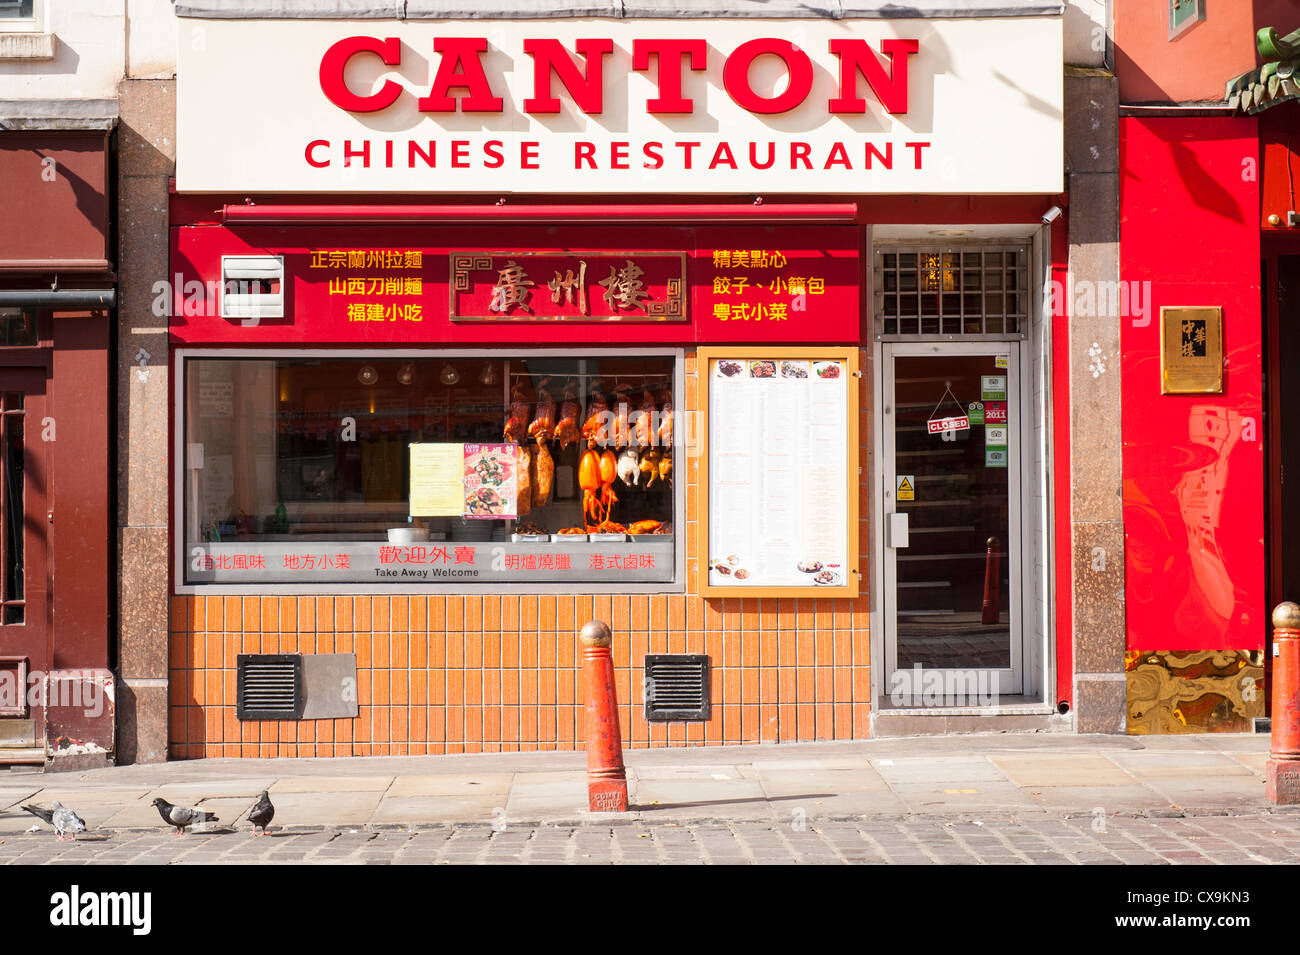 London West End Chinatown Newport Place Canton Chinese Restaurant Cafe snack-bar afficher poulet porc canard squid en scène de rue fenêtre Banque D'Images